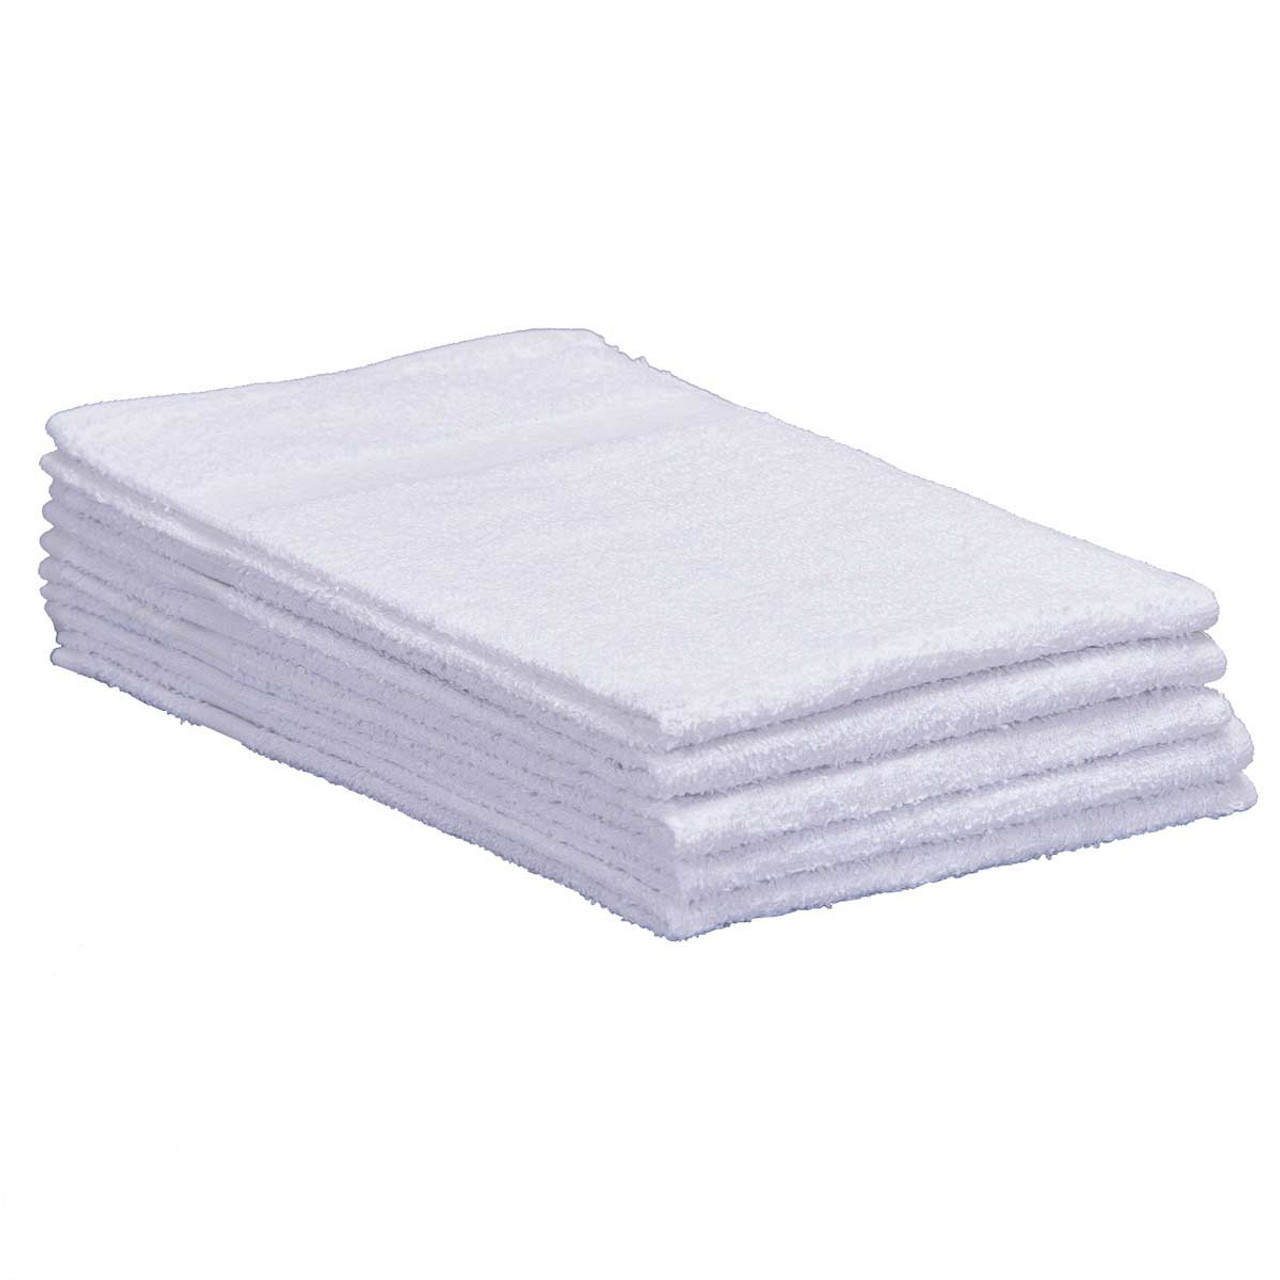 Bath Towels In Bulk, Wholesale Cotton Bath Towels